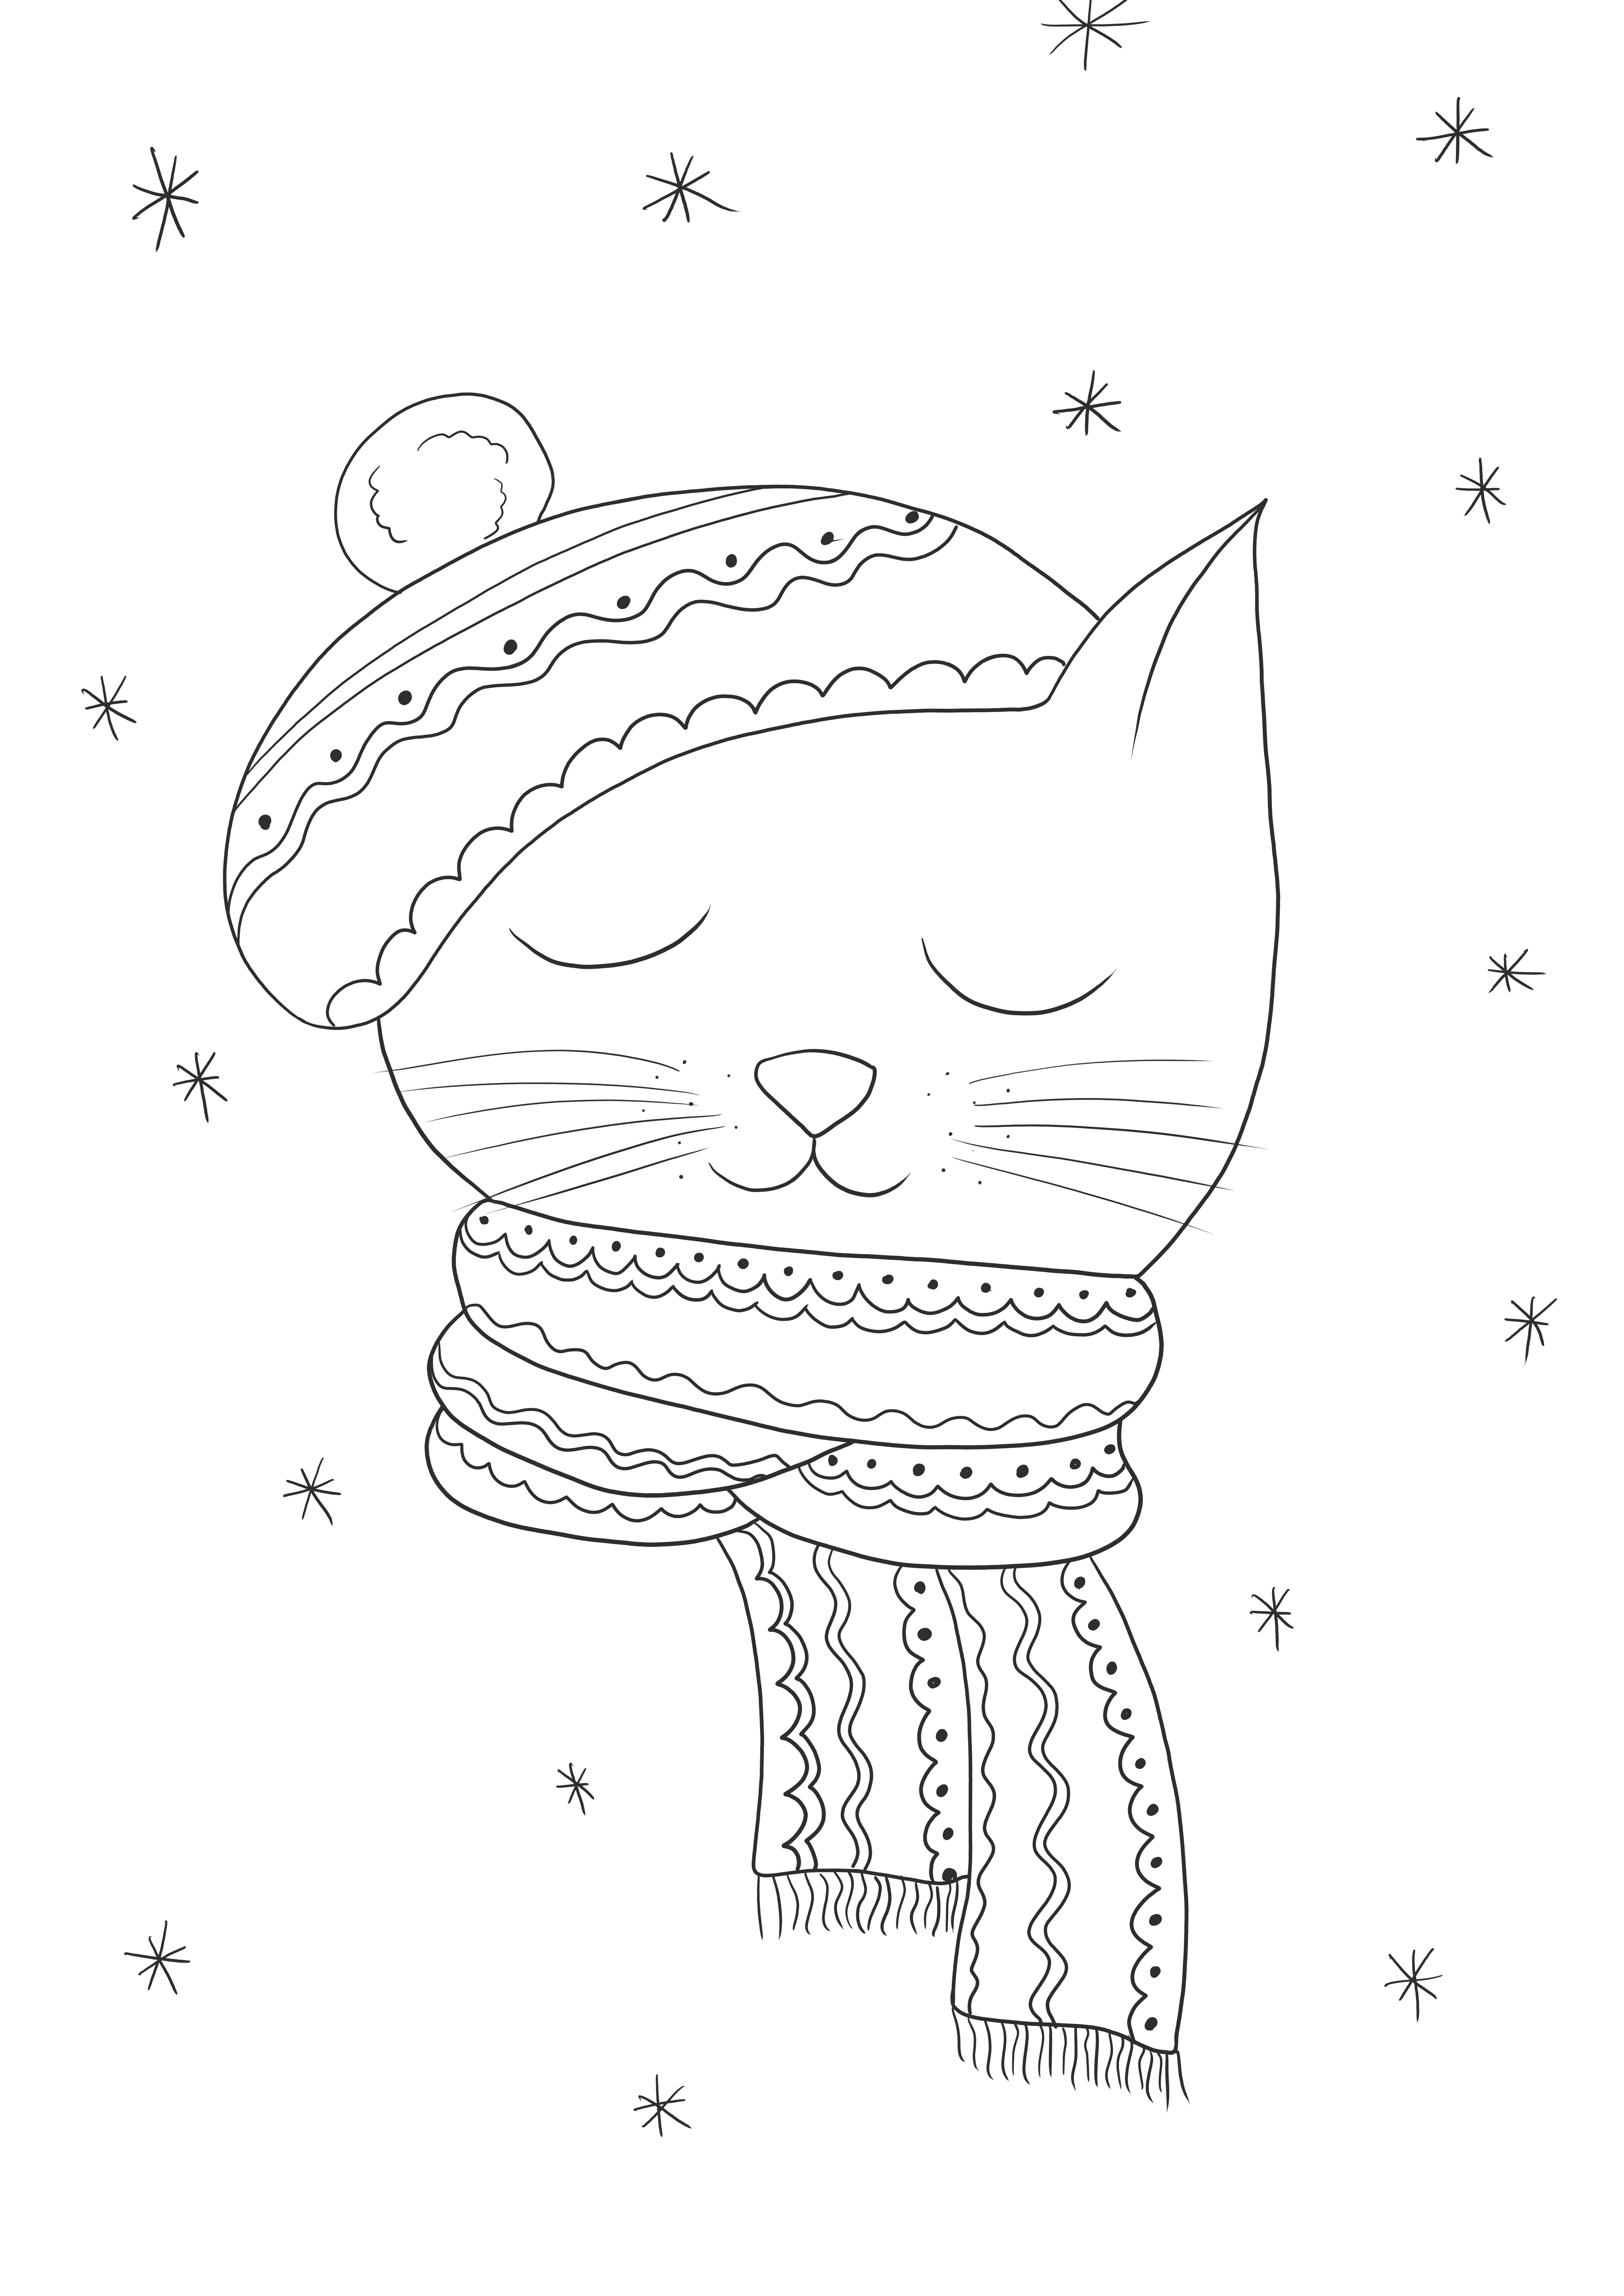 Téli macska – ingyenesen nyomtatható a gyerekeknek való egyszerű színezéshez